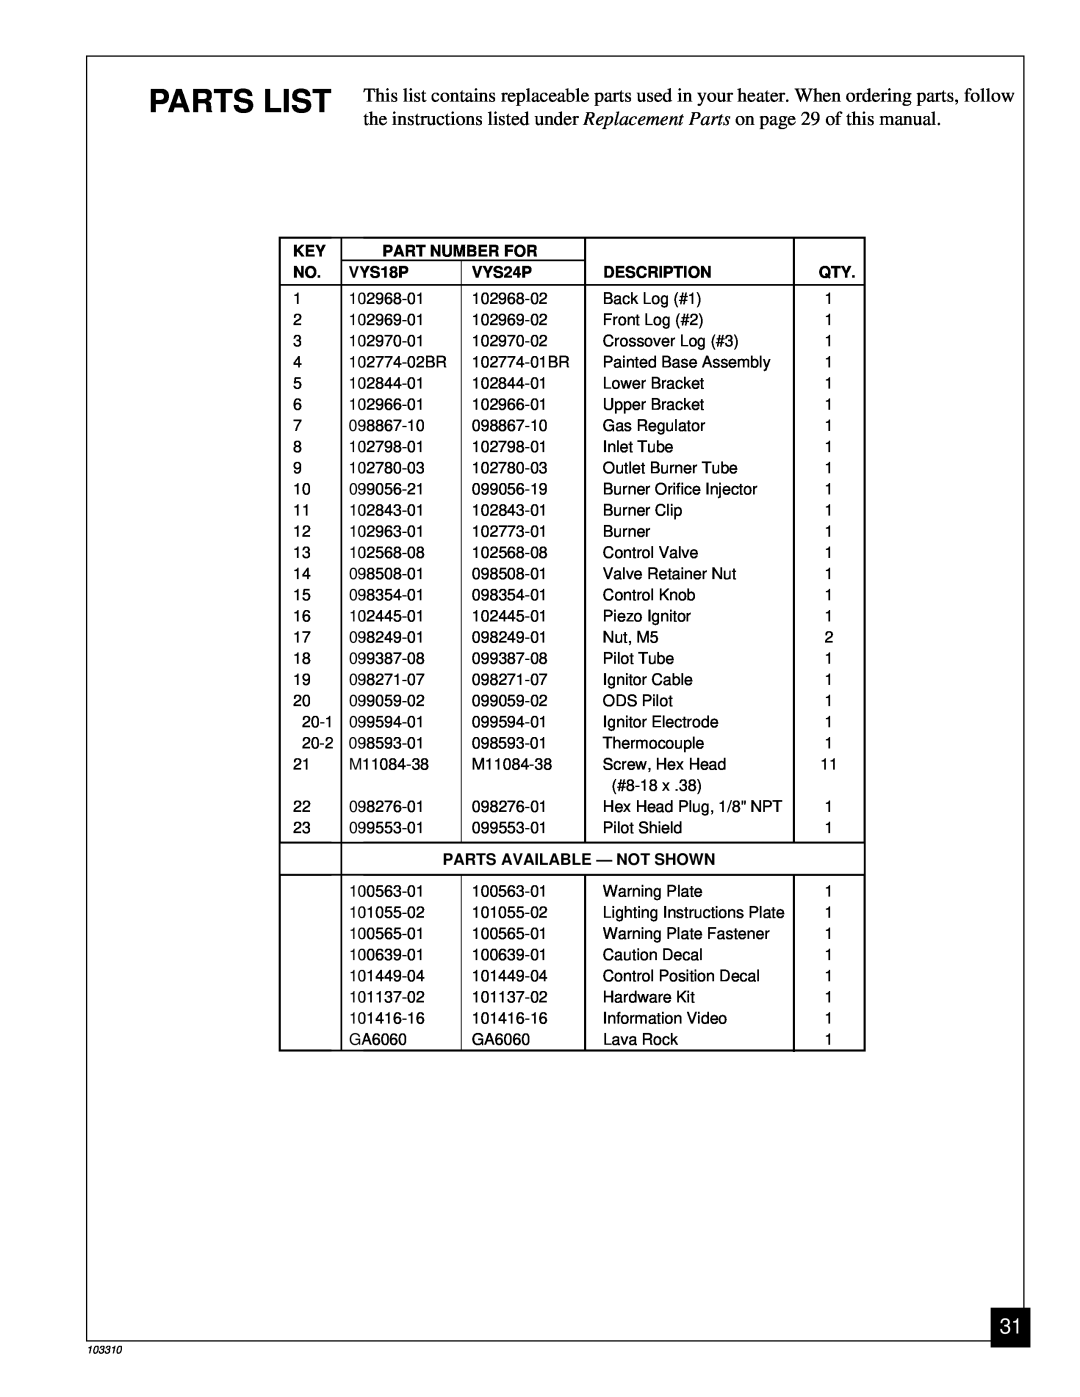 Desa UNVENTED (VENT-FREE) PROPANE/LPGAS LOG HEATER Parts List, Part Number For, VYS18P, VYS24P, Description 